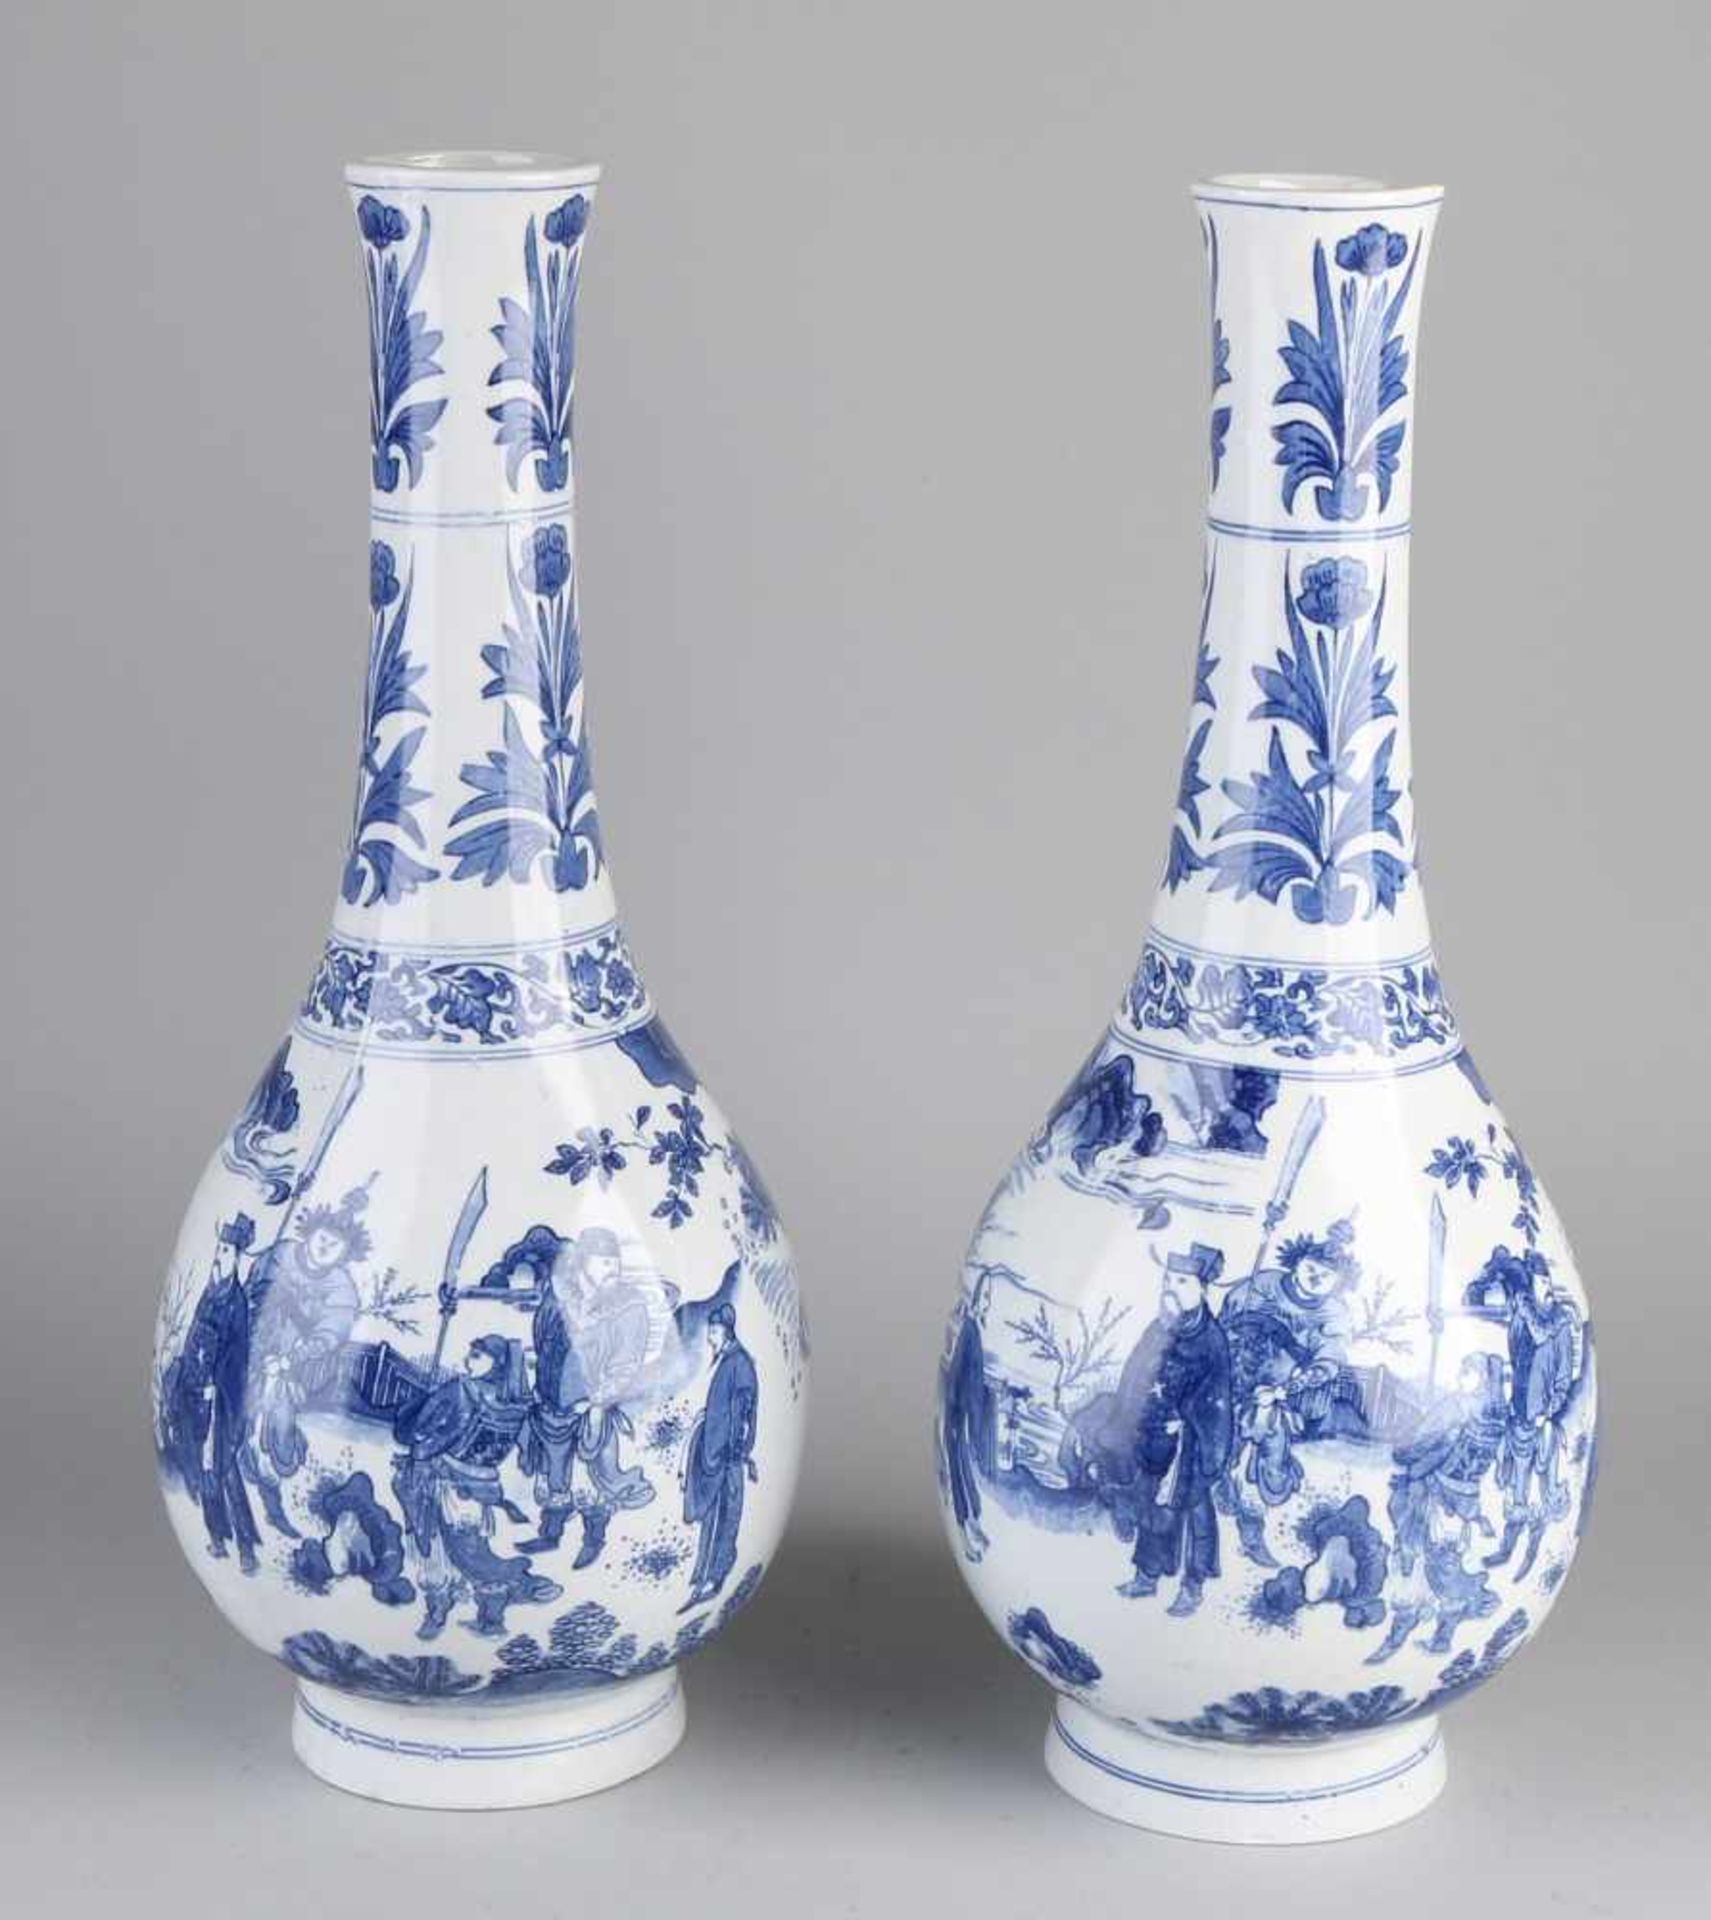 Zwei große chinesische Porzellanvasen nach altem Beispiel. Lithographiert. Größe: H 40,5 cm. In